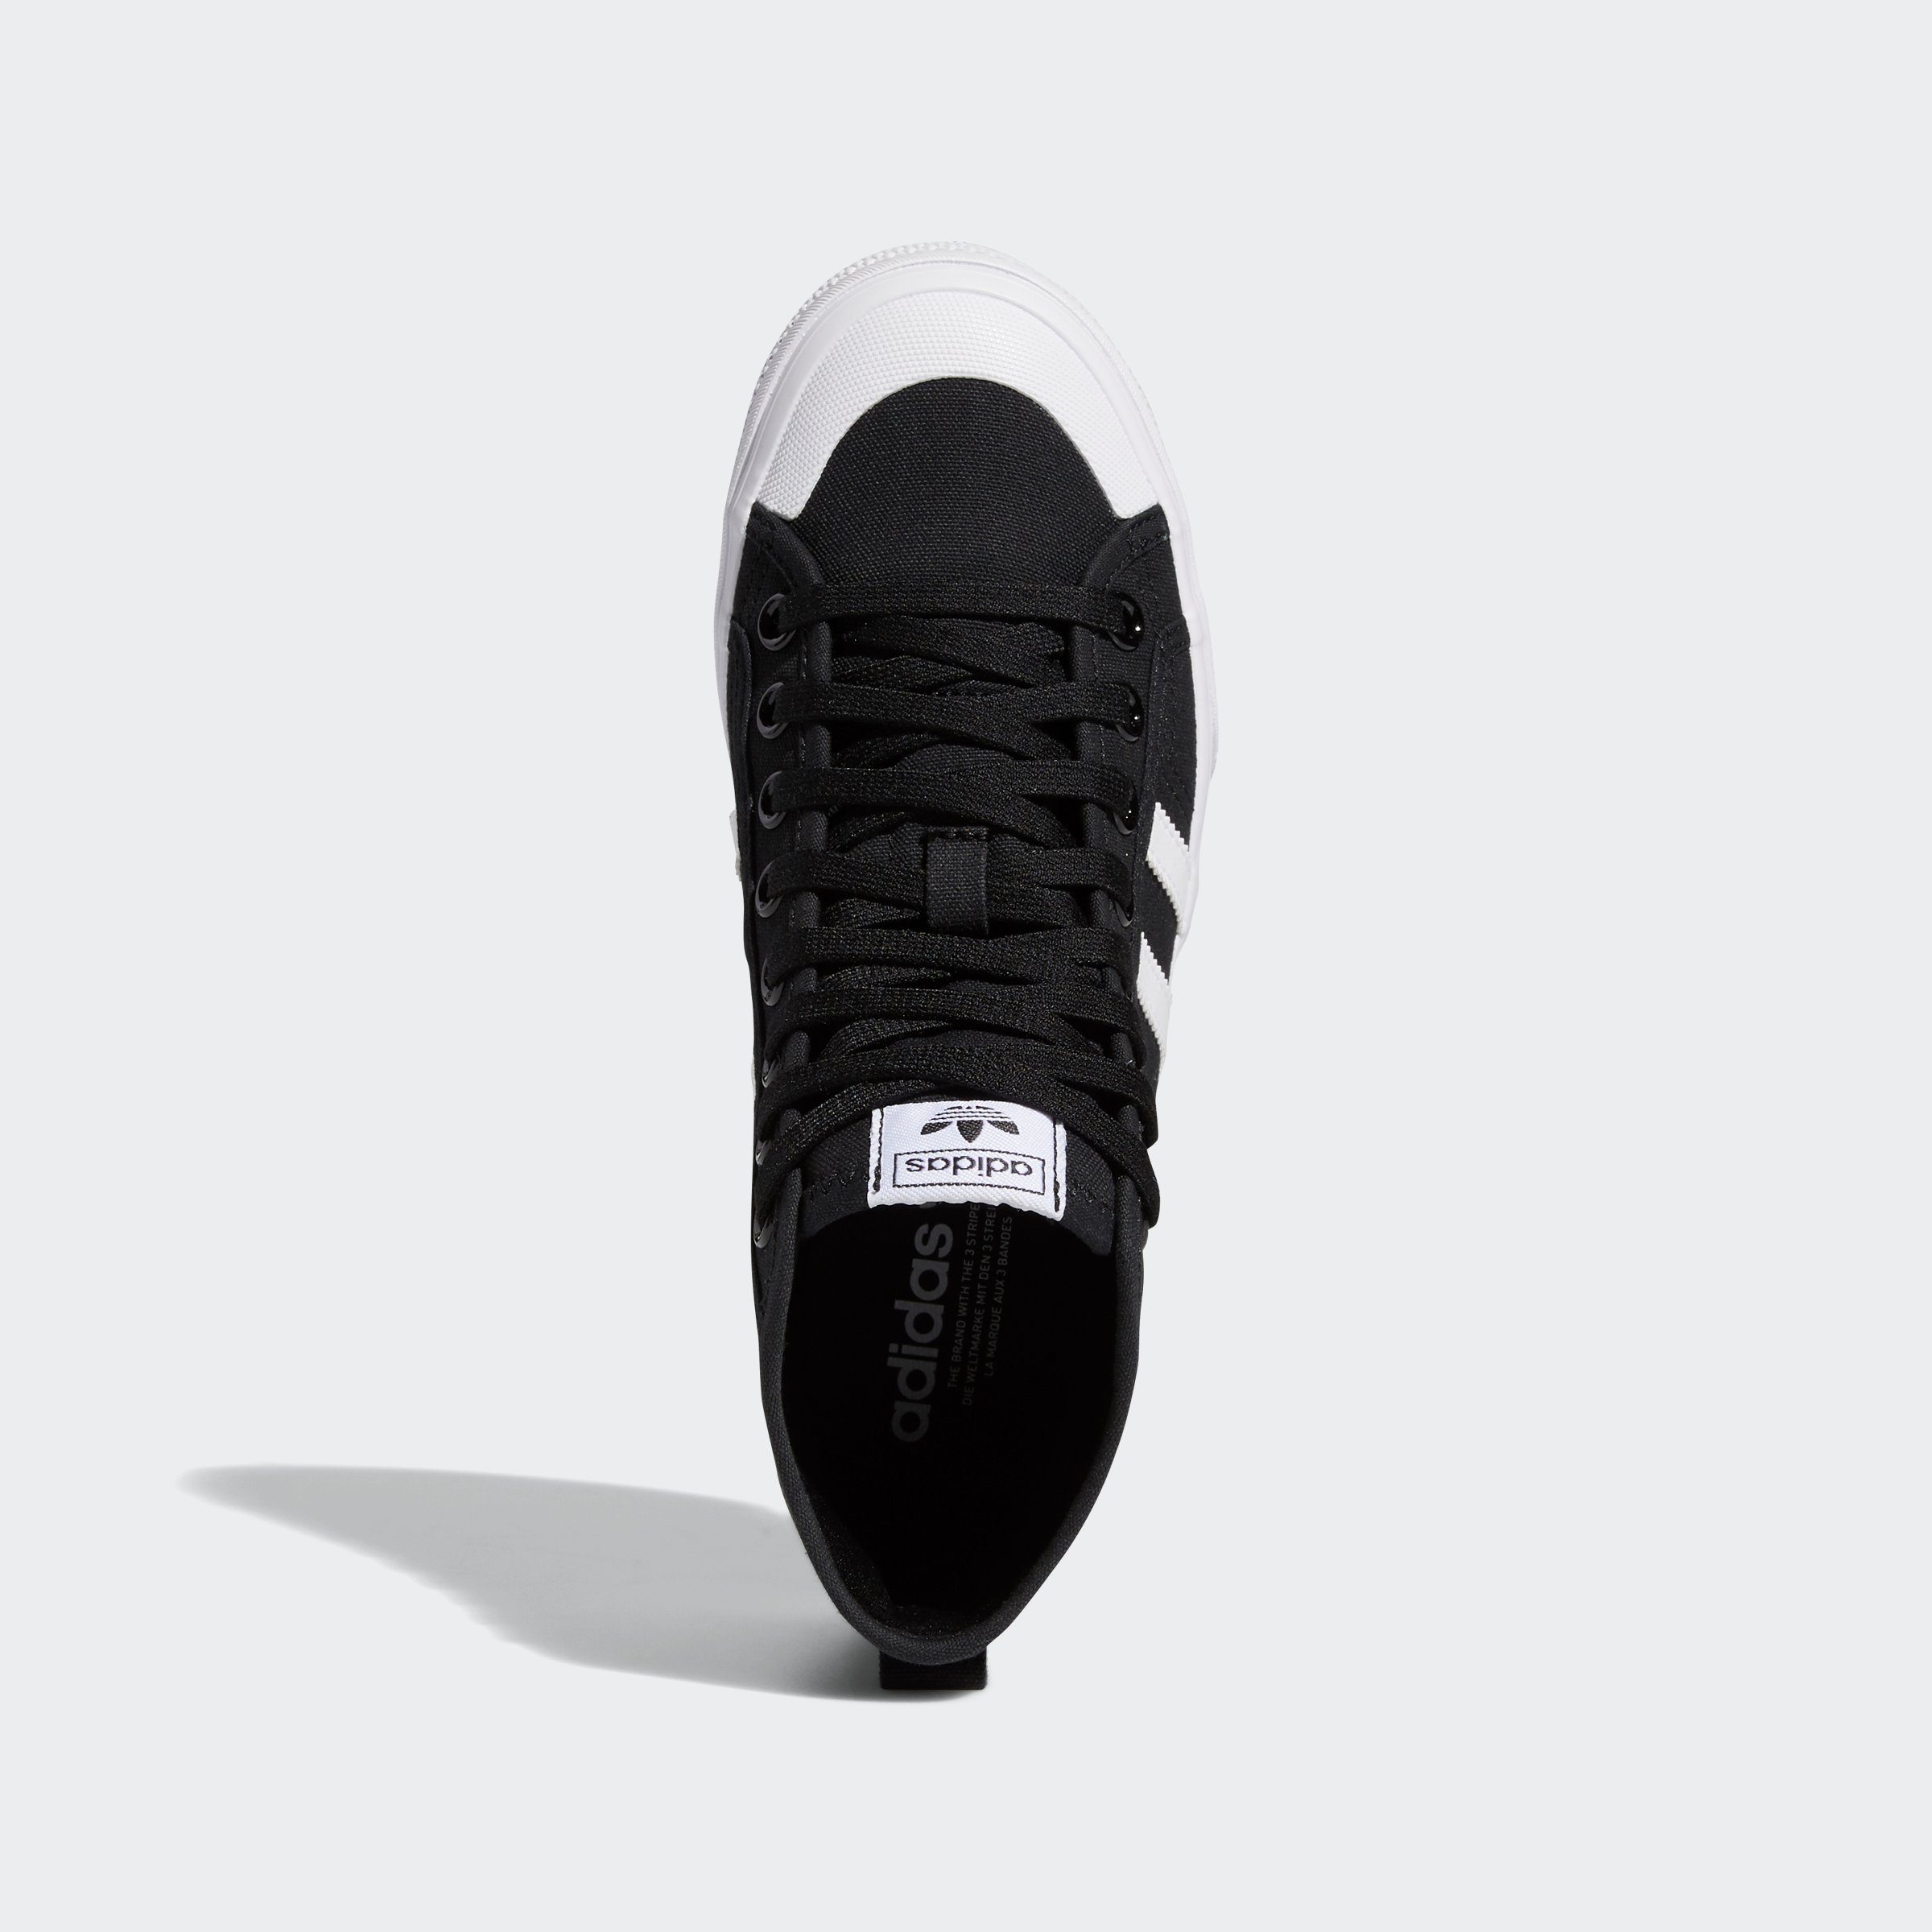 PLATFORM White / Originals Black adidas MID Sneaker NIZZA Core Cloud / Cloud White